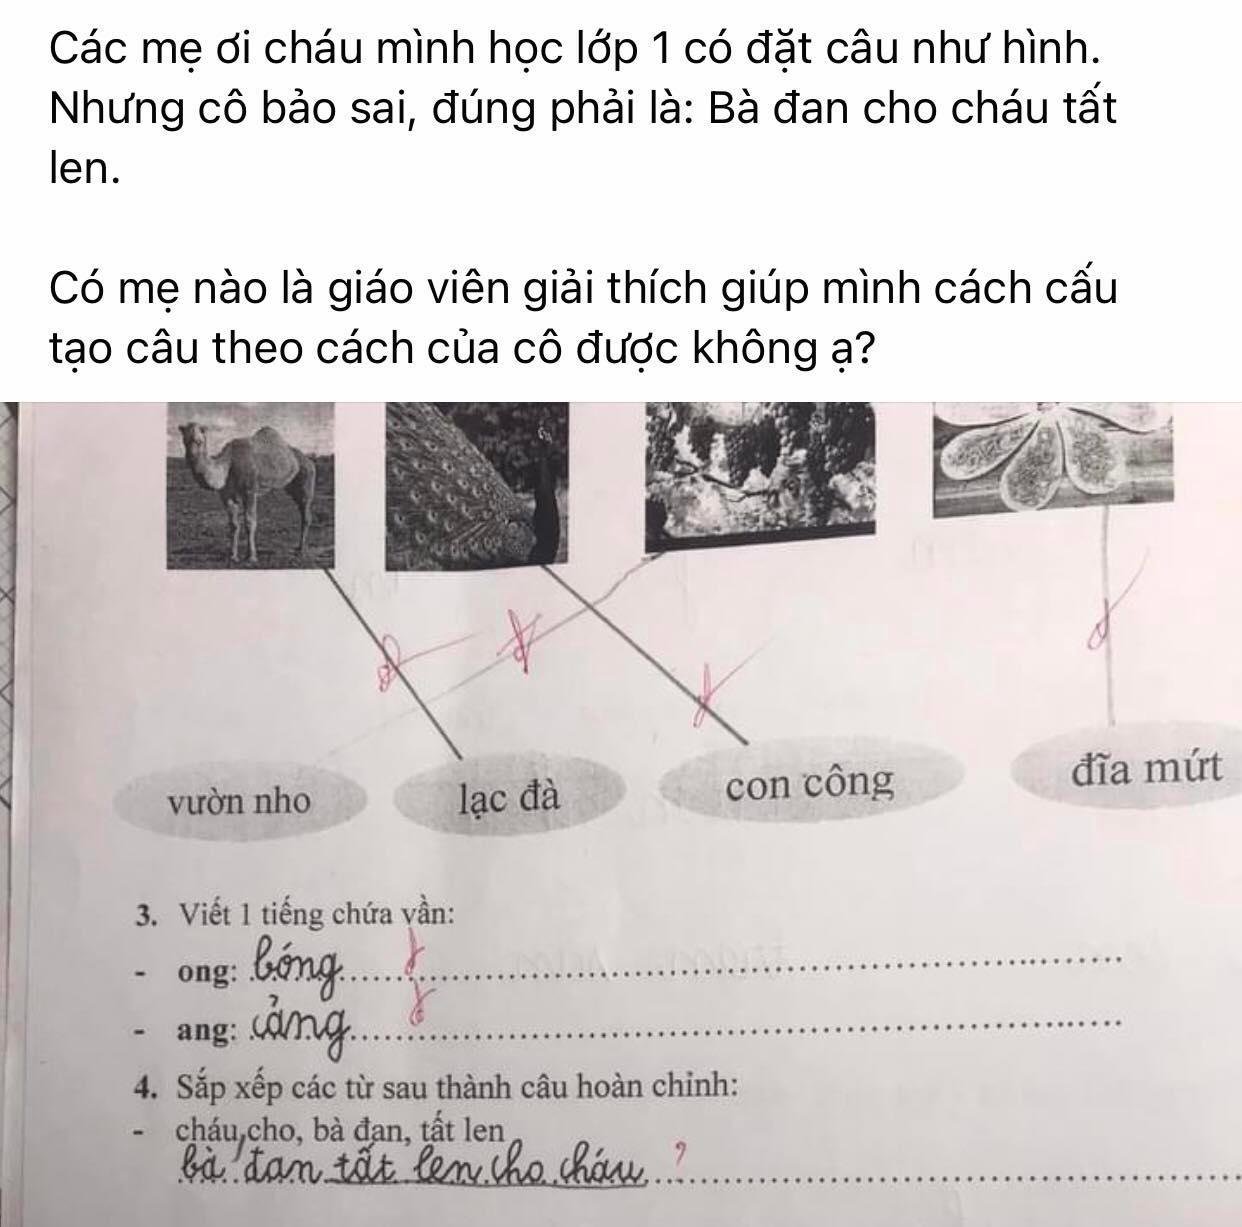 Bài tập lớp 1 yêu cầu sắp xếp câu Tiếng Việt, cậu nhóc viết 1 đáp án nhưng bị gạch sai, xem lời giải của giáo viên mà lú luôn - Ảnh 1.